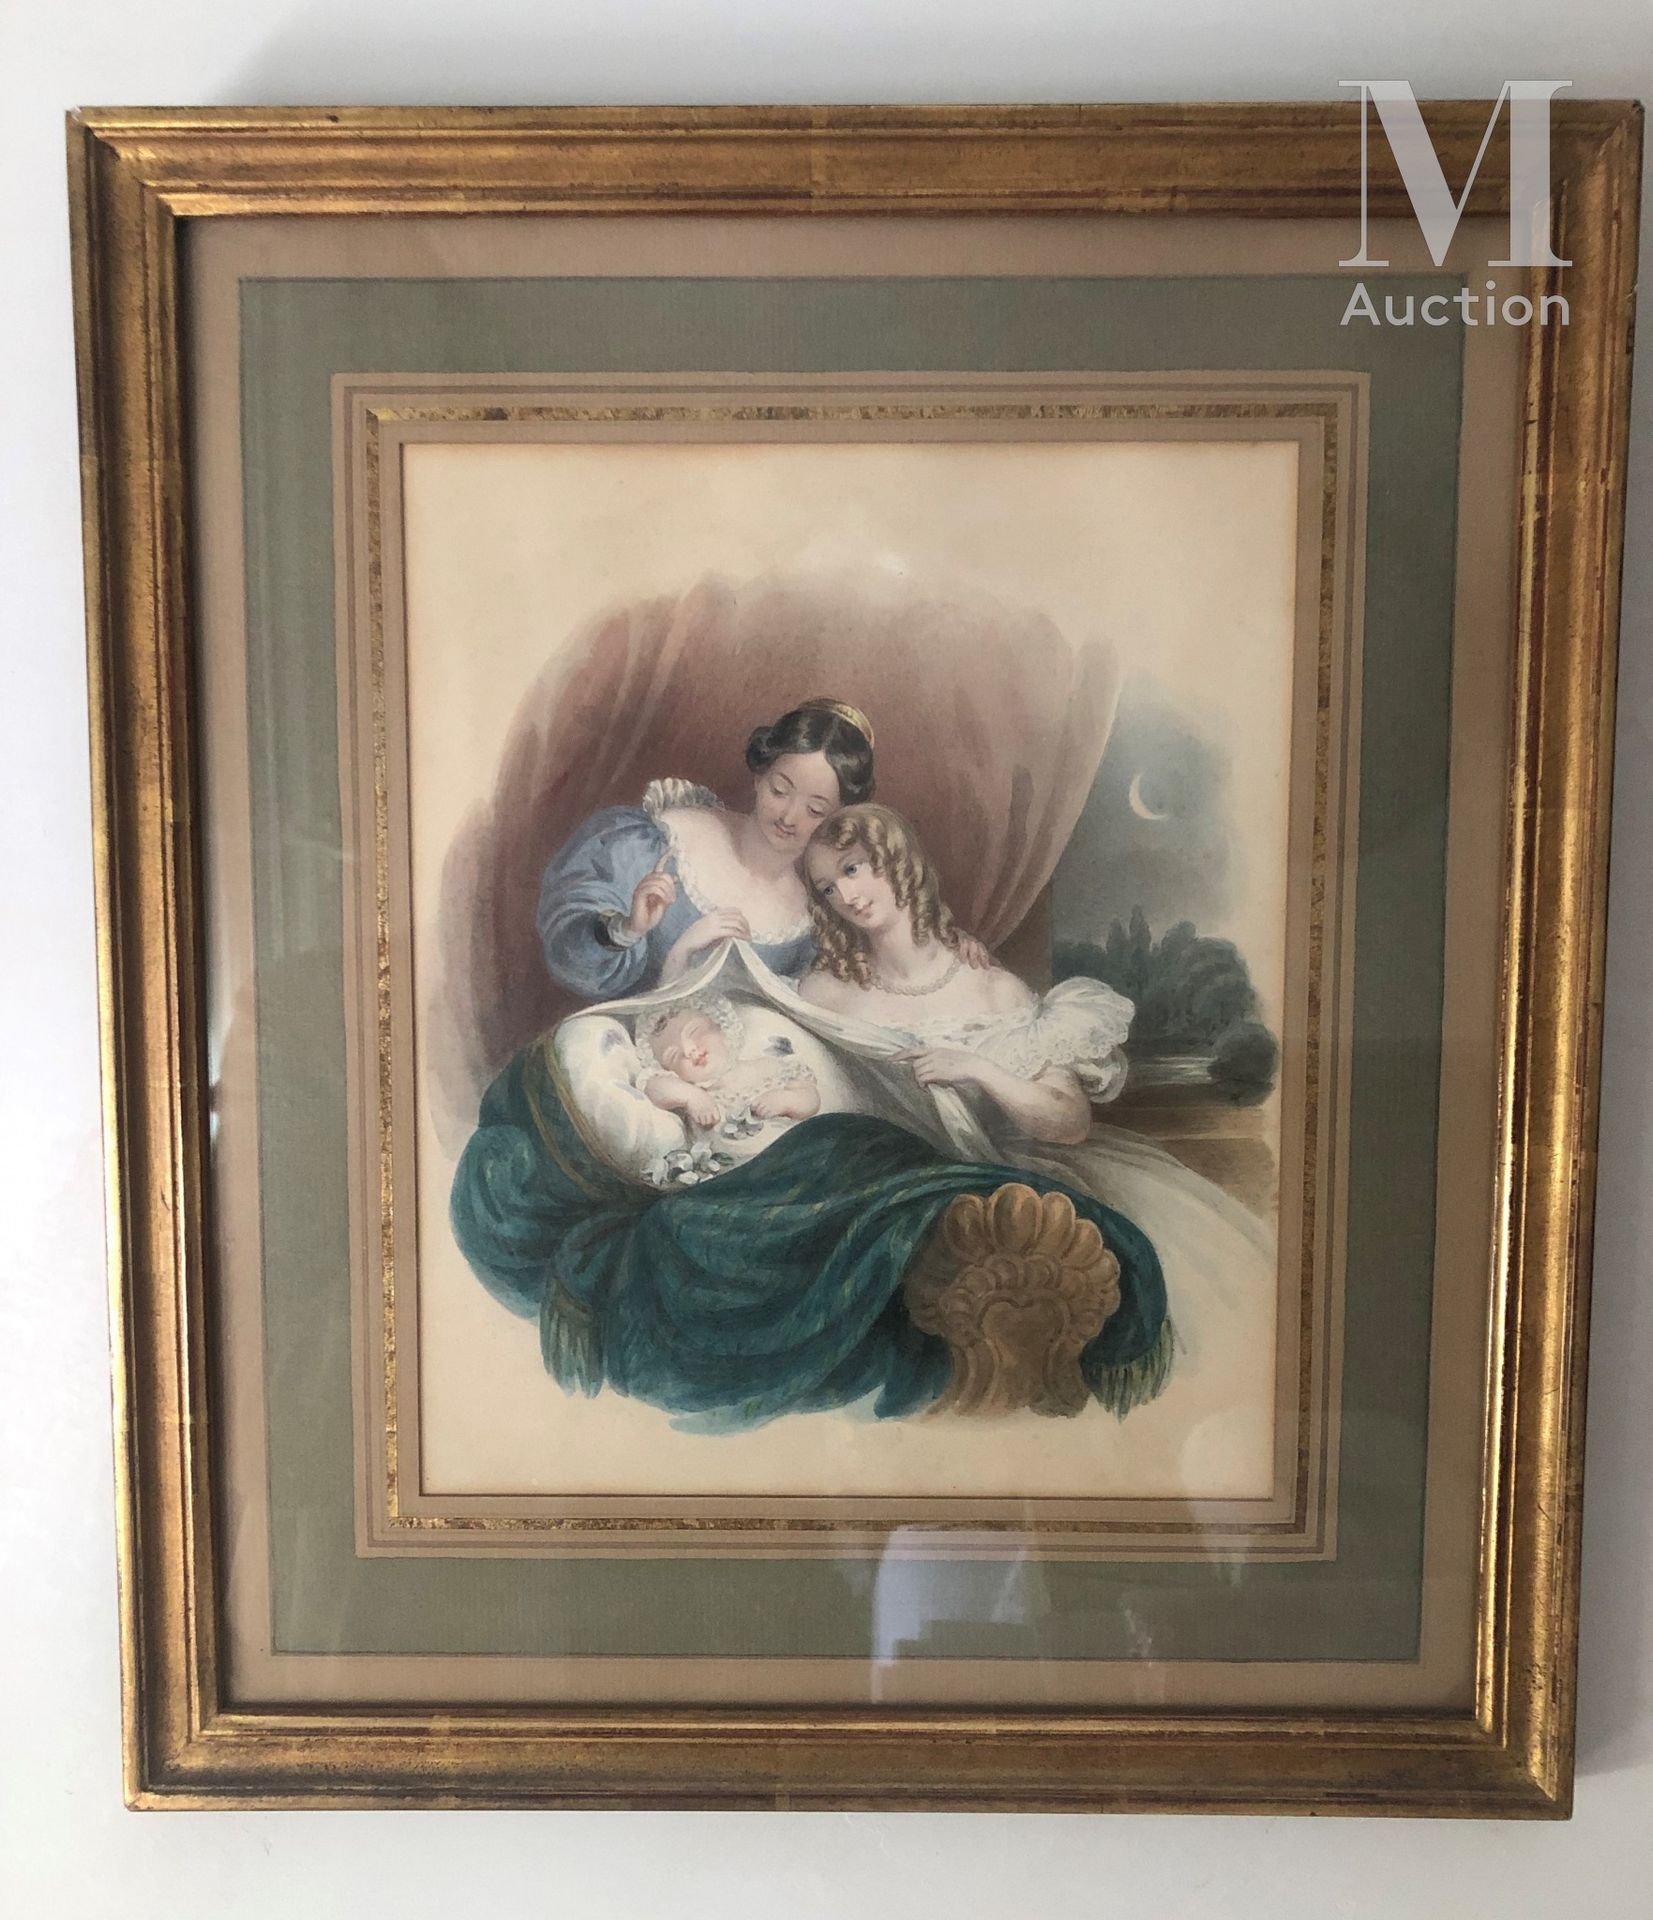 ECOLE FRANCAISE DU XIXème siècle Scena di maternità

Acquerello 

23,5 x 19 cm.